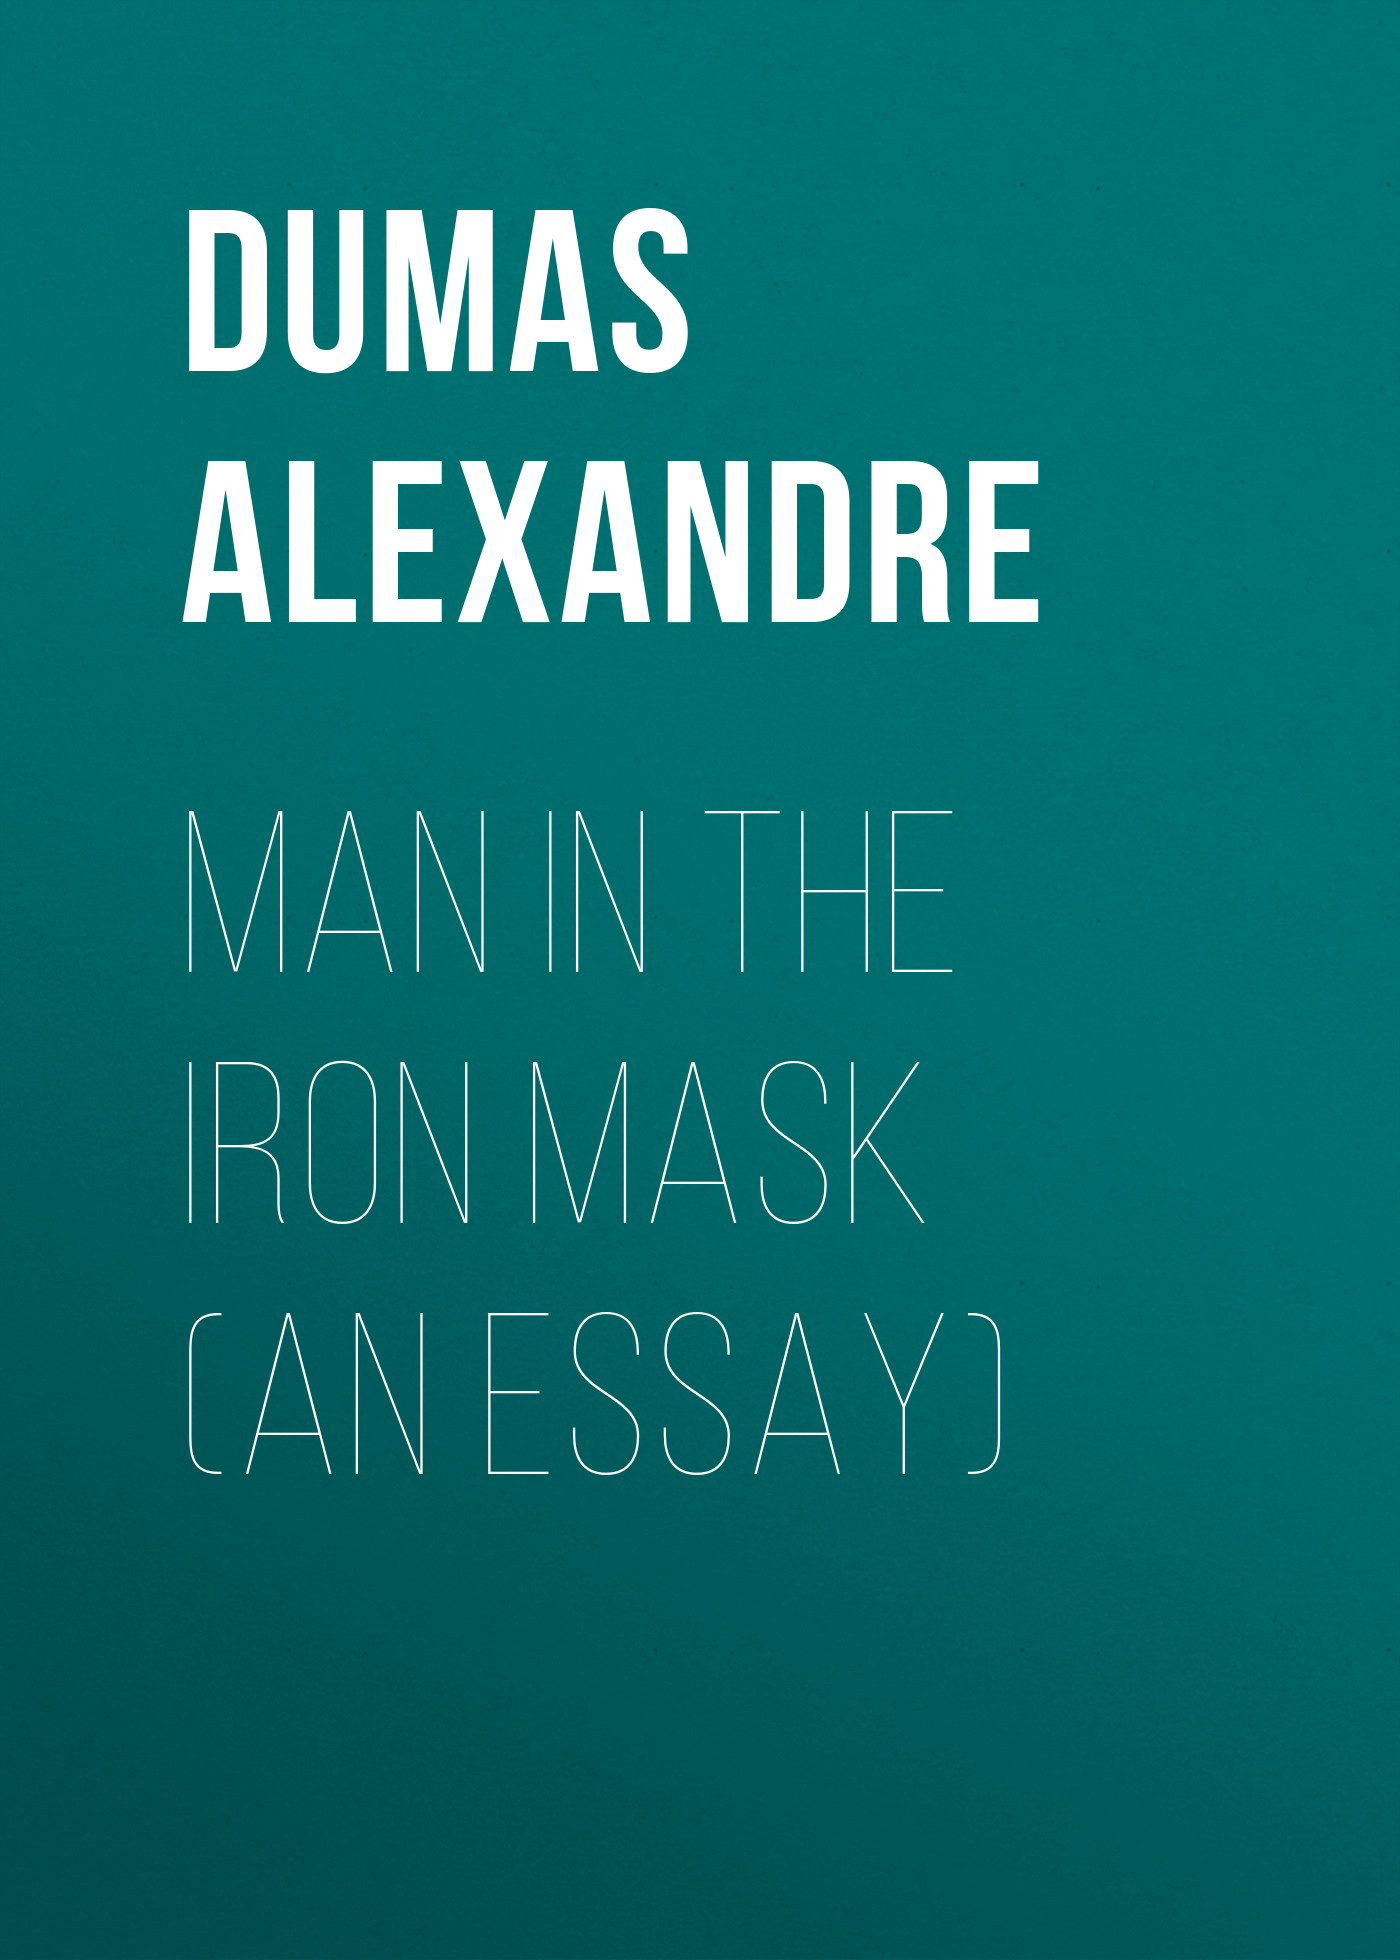 Книга Man in the Iron Mask (an Essay) из серии , созданная Alexandre Dumas, может относится к жанру Литература 19 века, Зарубежная старинная литература, Зарубежная классика. Стоимость электронной книги Man in the Iron Mask (an Essay) с идентификатором 25201839 составляет 0 руб.